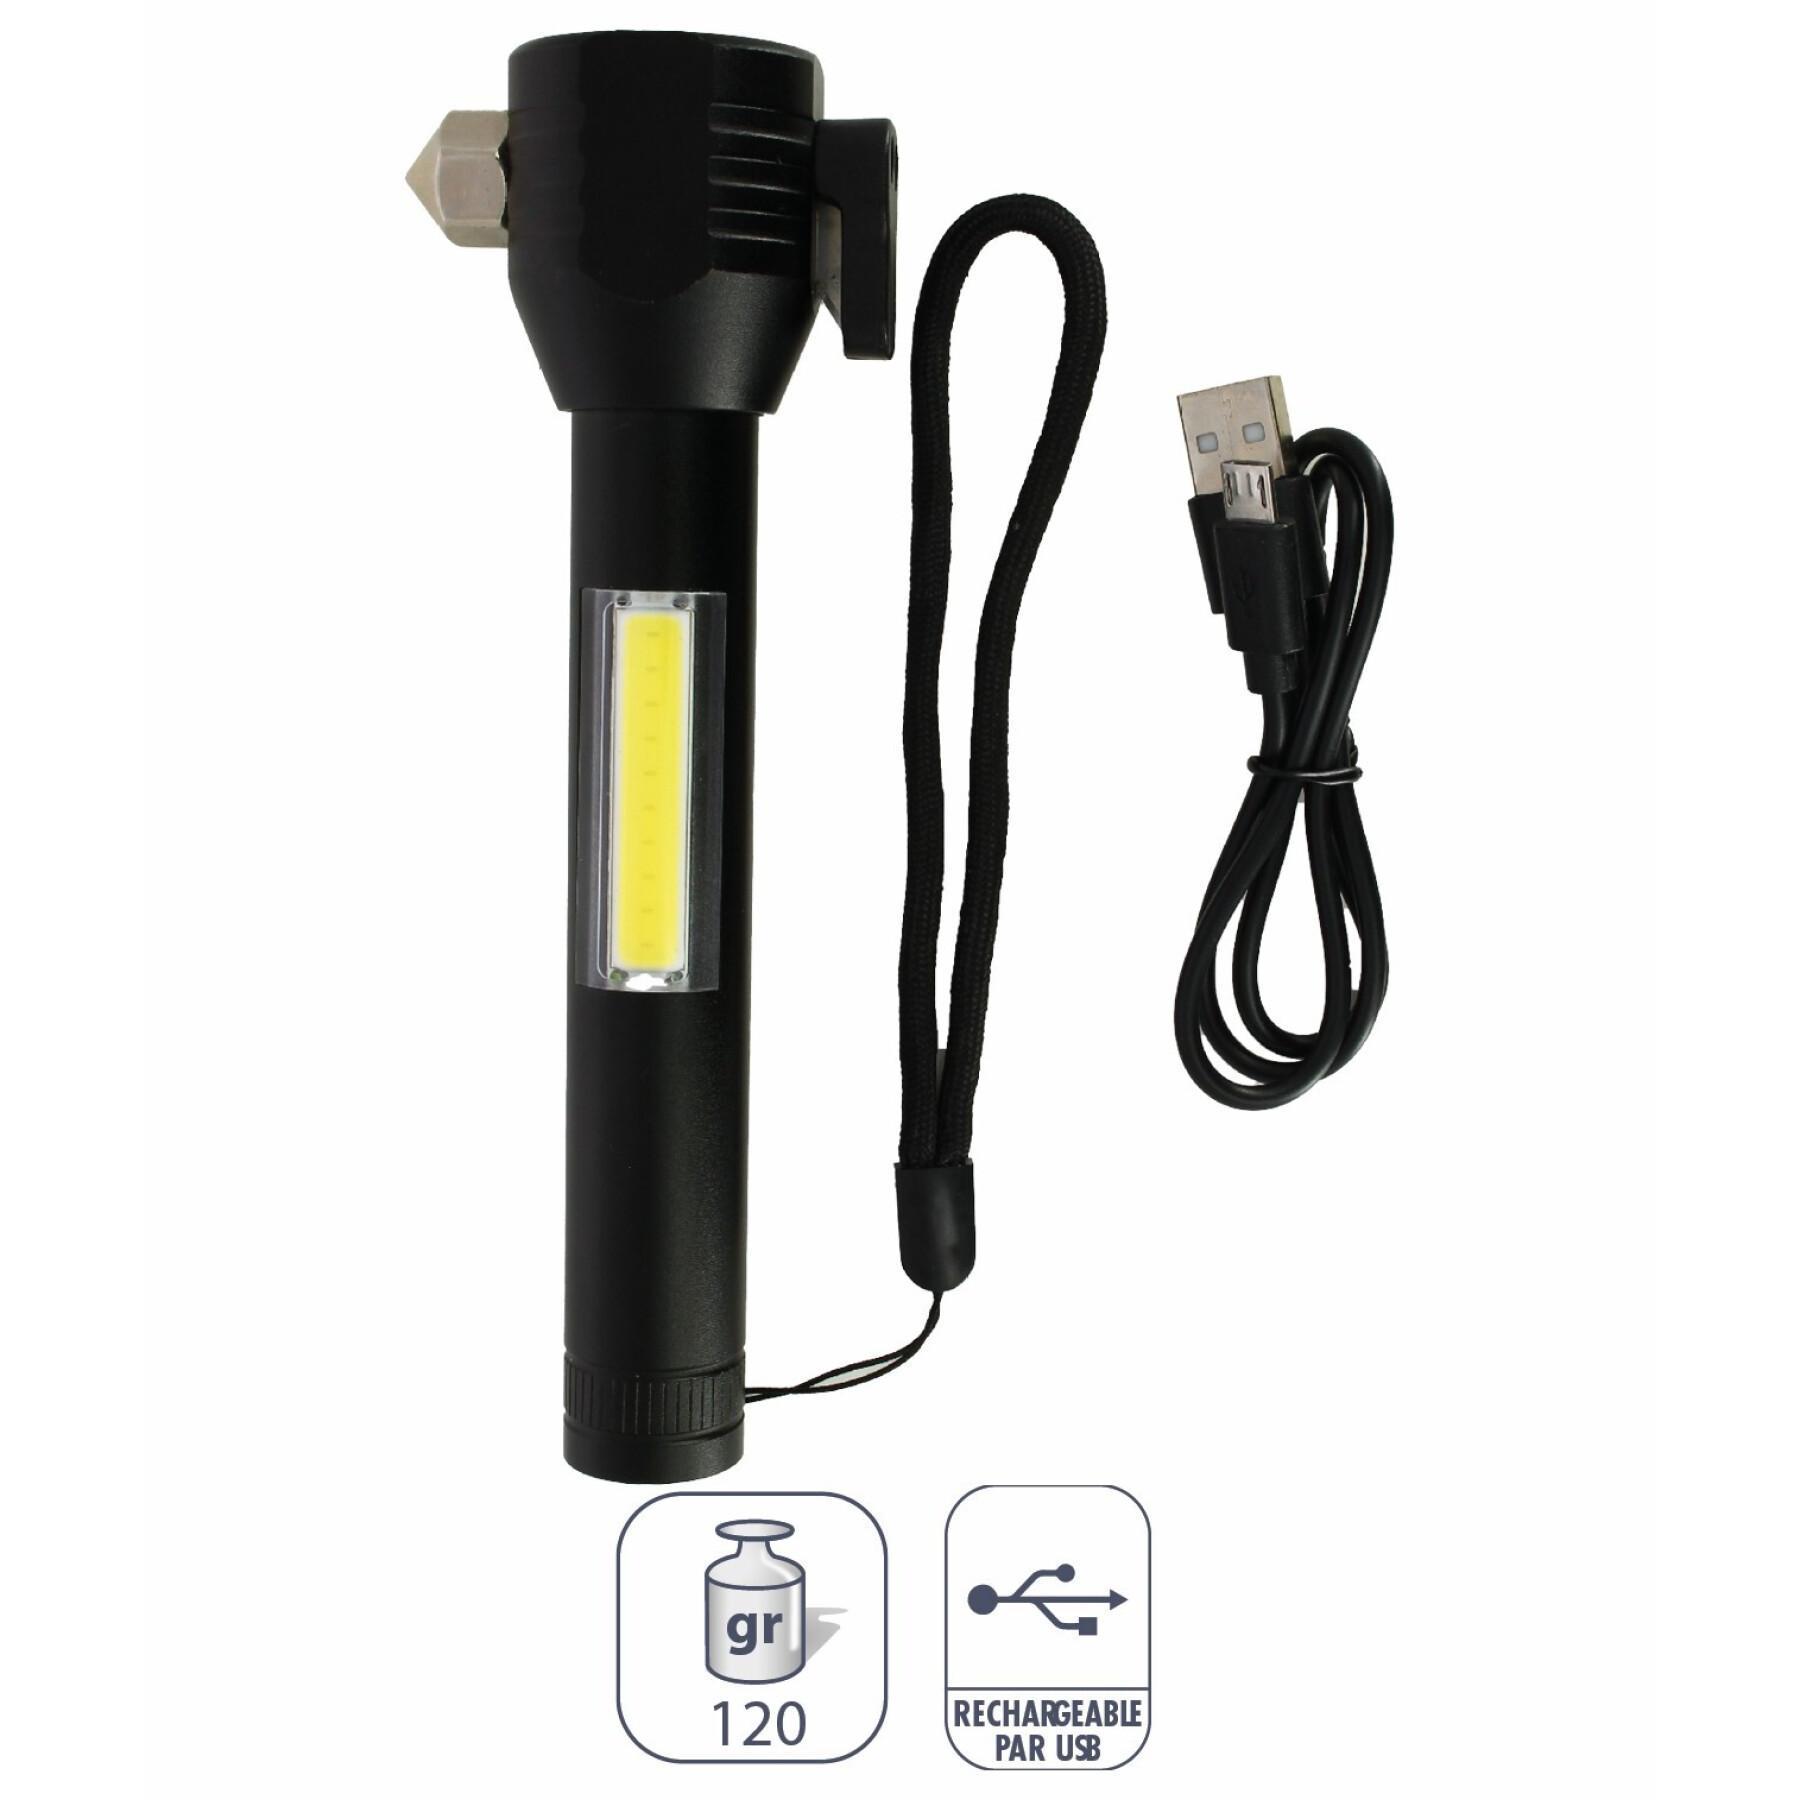 Rechargeable flashlight Élémenterre Kispiox